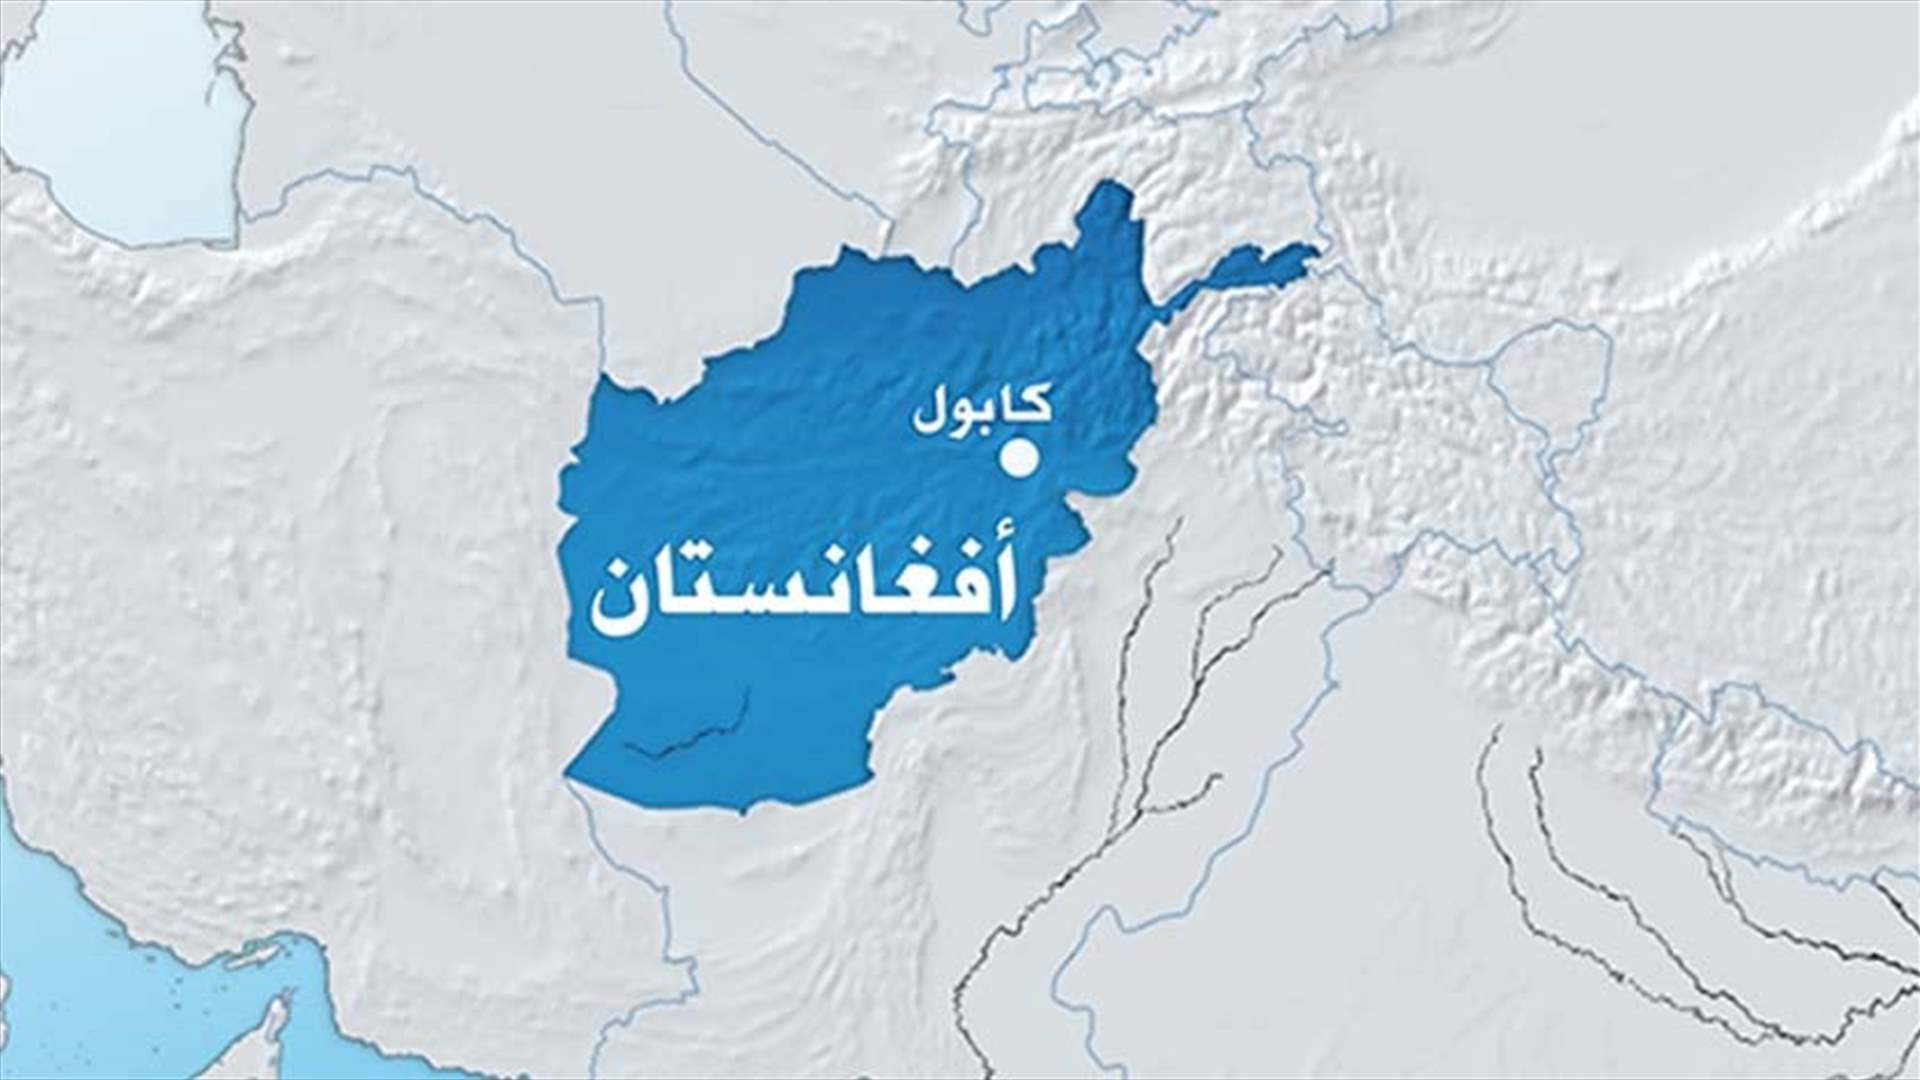 محصلة قياسية في افغانستان بلغت 11 الف ضحية مدنية عام 2015  